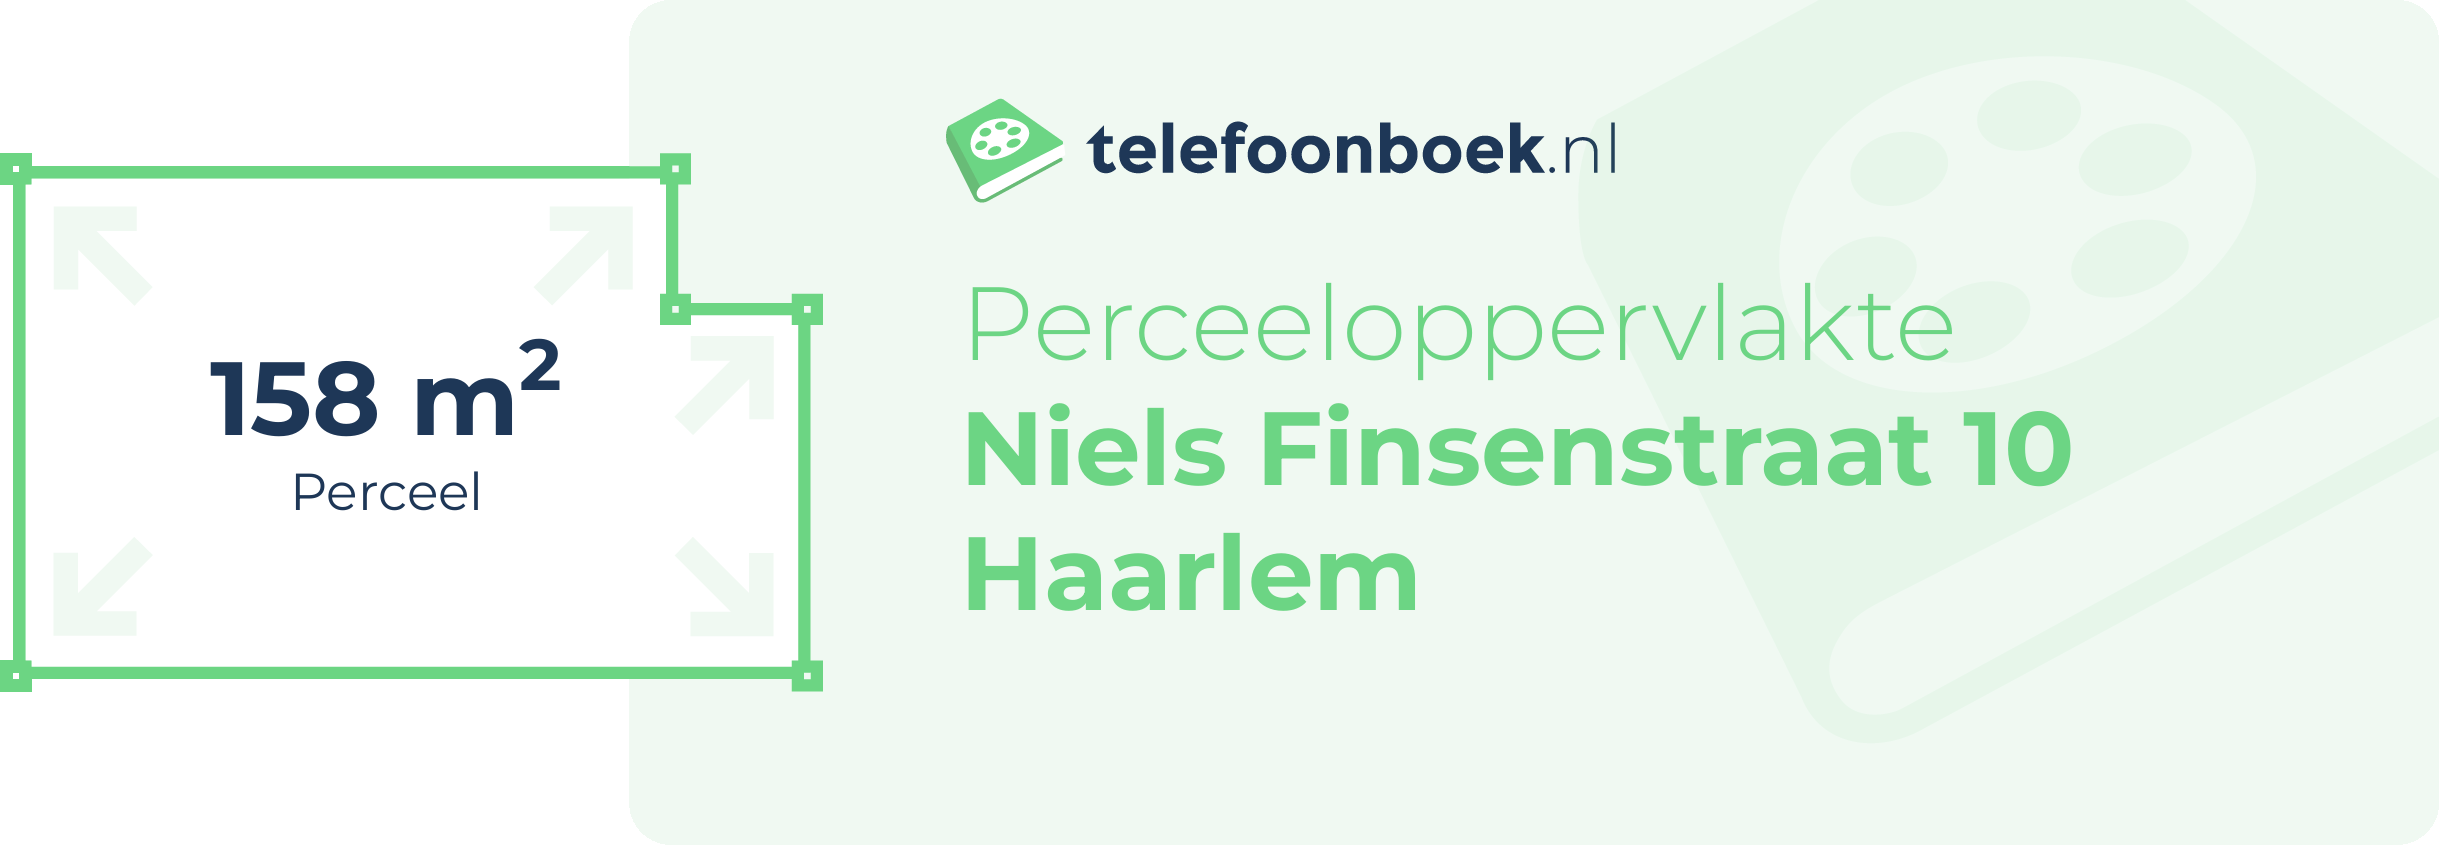 Perceeloppervlakte Niels Finsenstraat 10 Haarlem